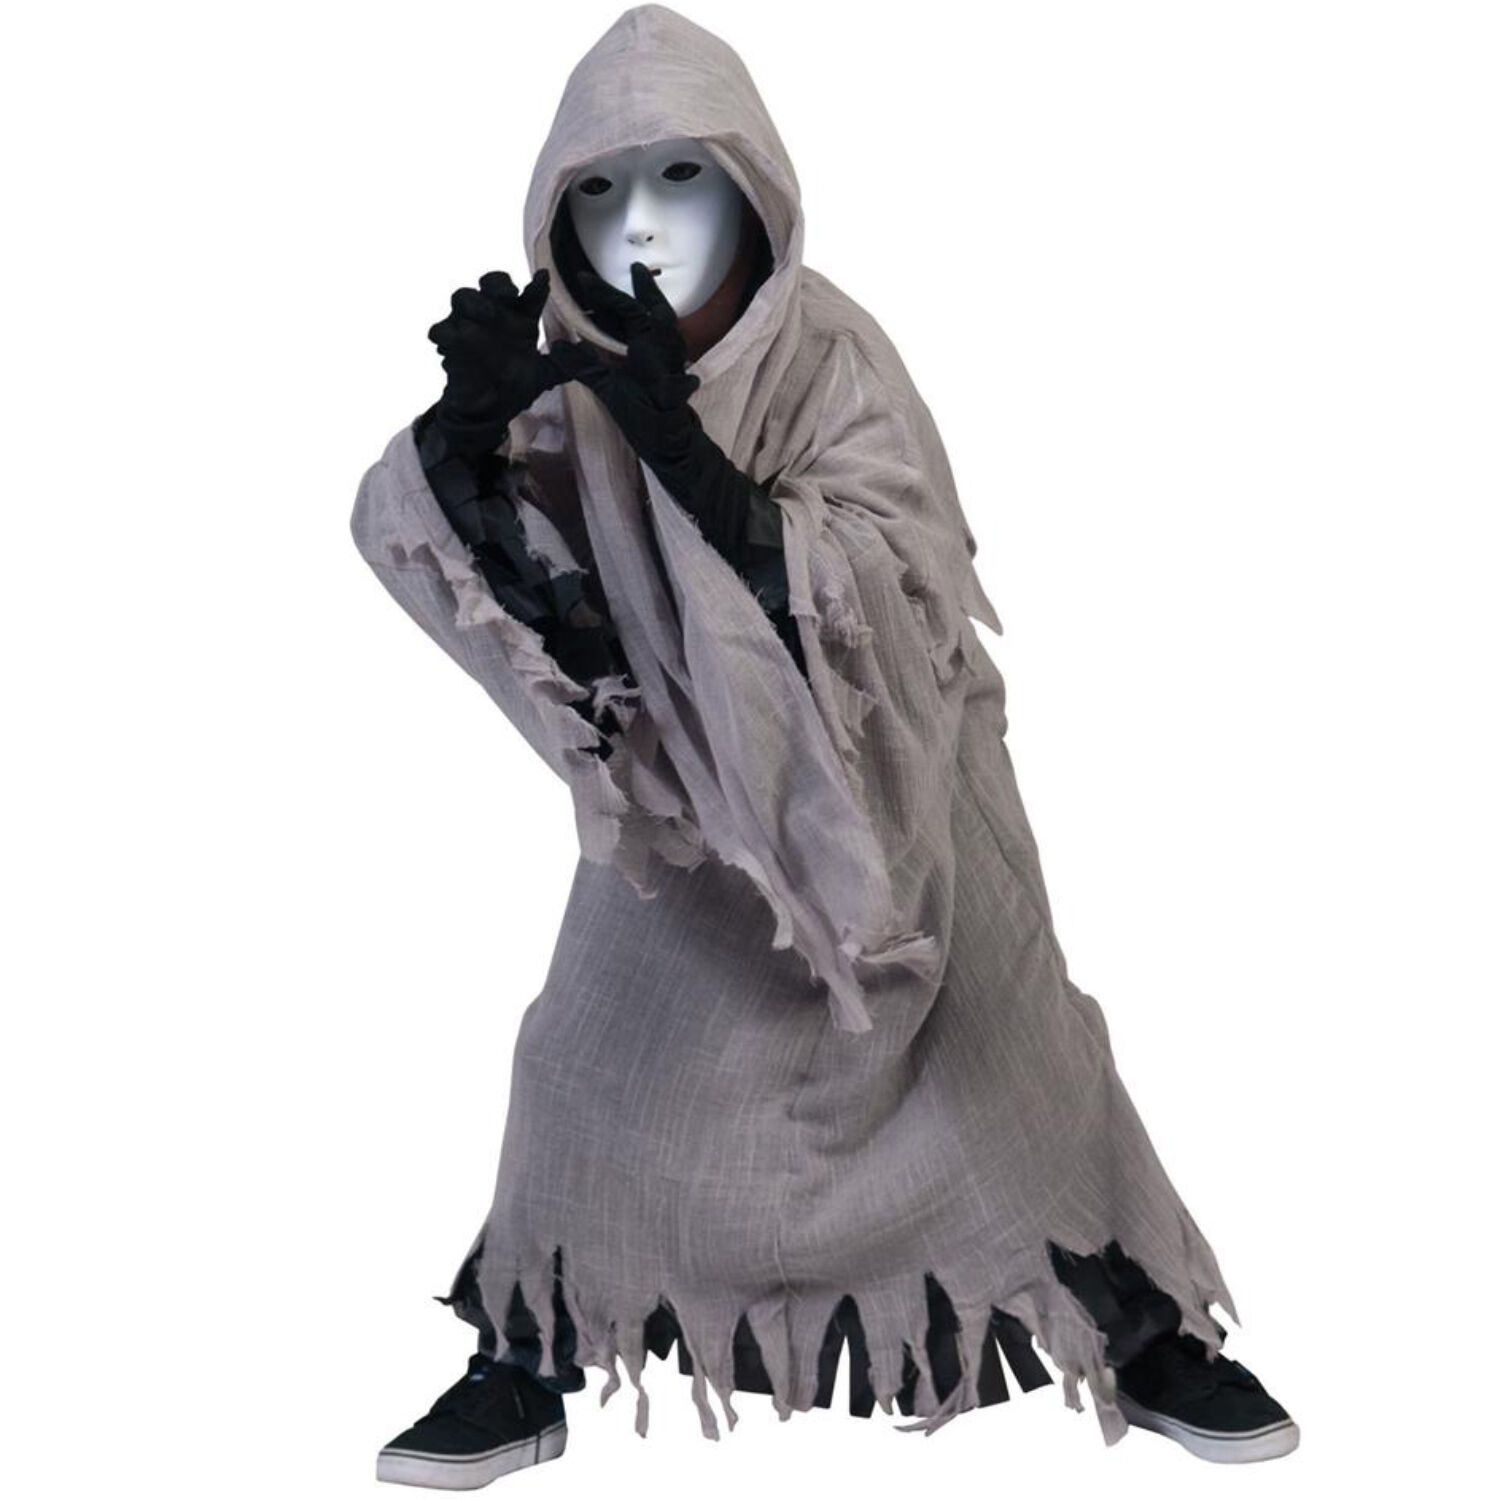 NEU Kinder-Kostüm Geister-Kutte mit Kapuze, grau-schwarz, Einheitsgröße